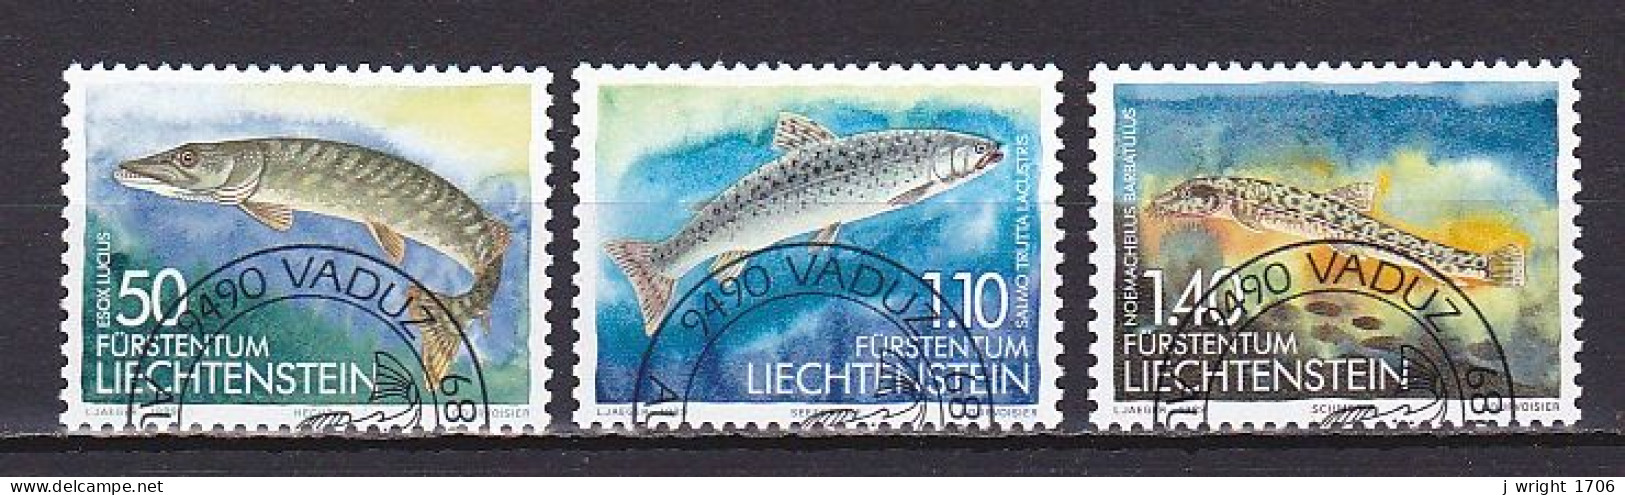 Liechtenstein, 1989, Fish 2nd Series, Set,  CTO - Gebraucht